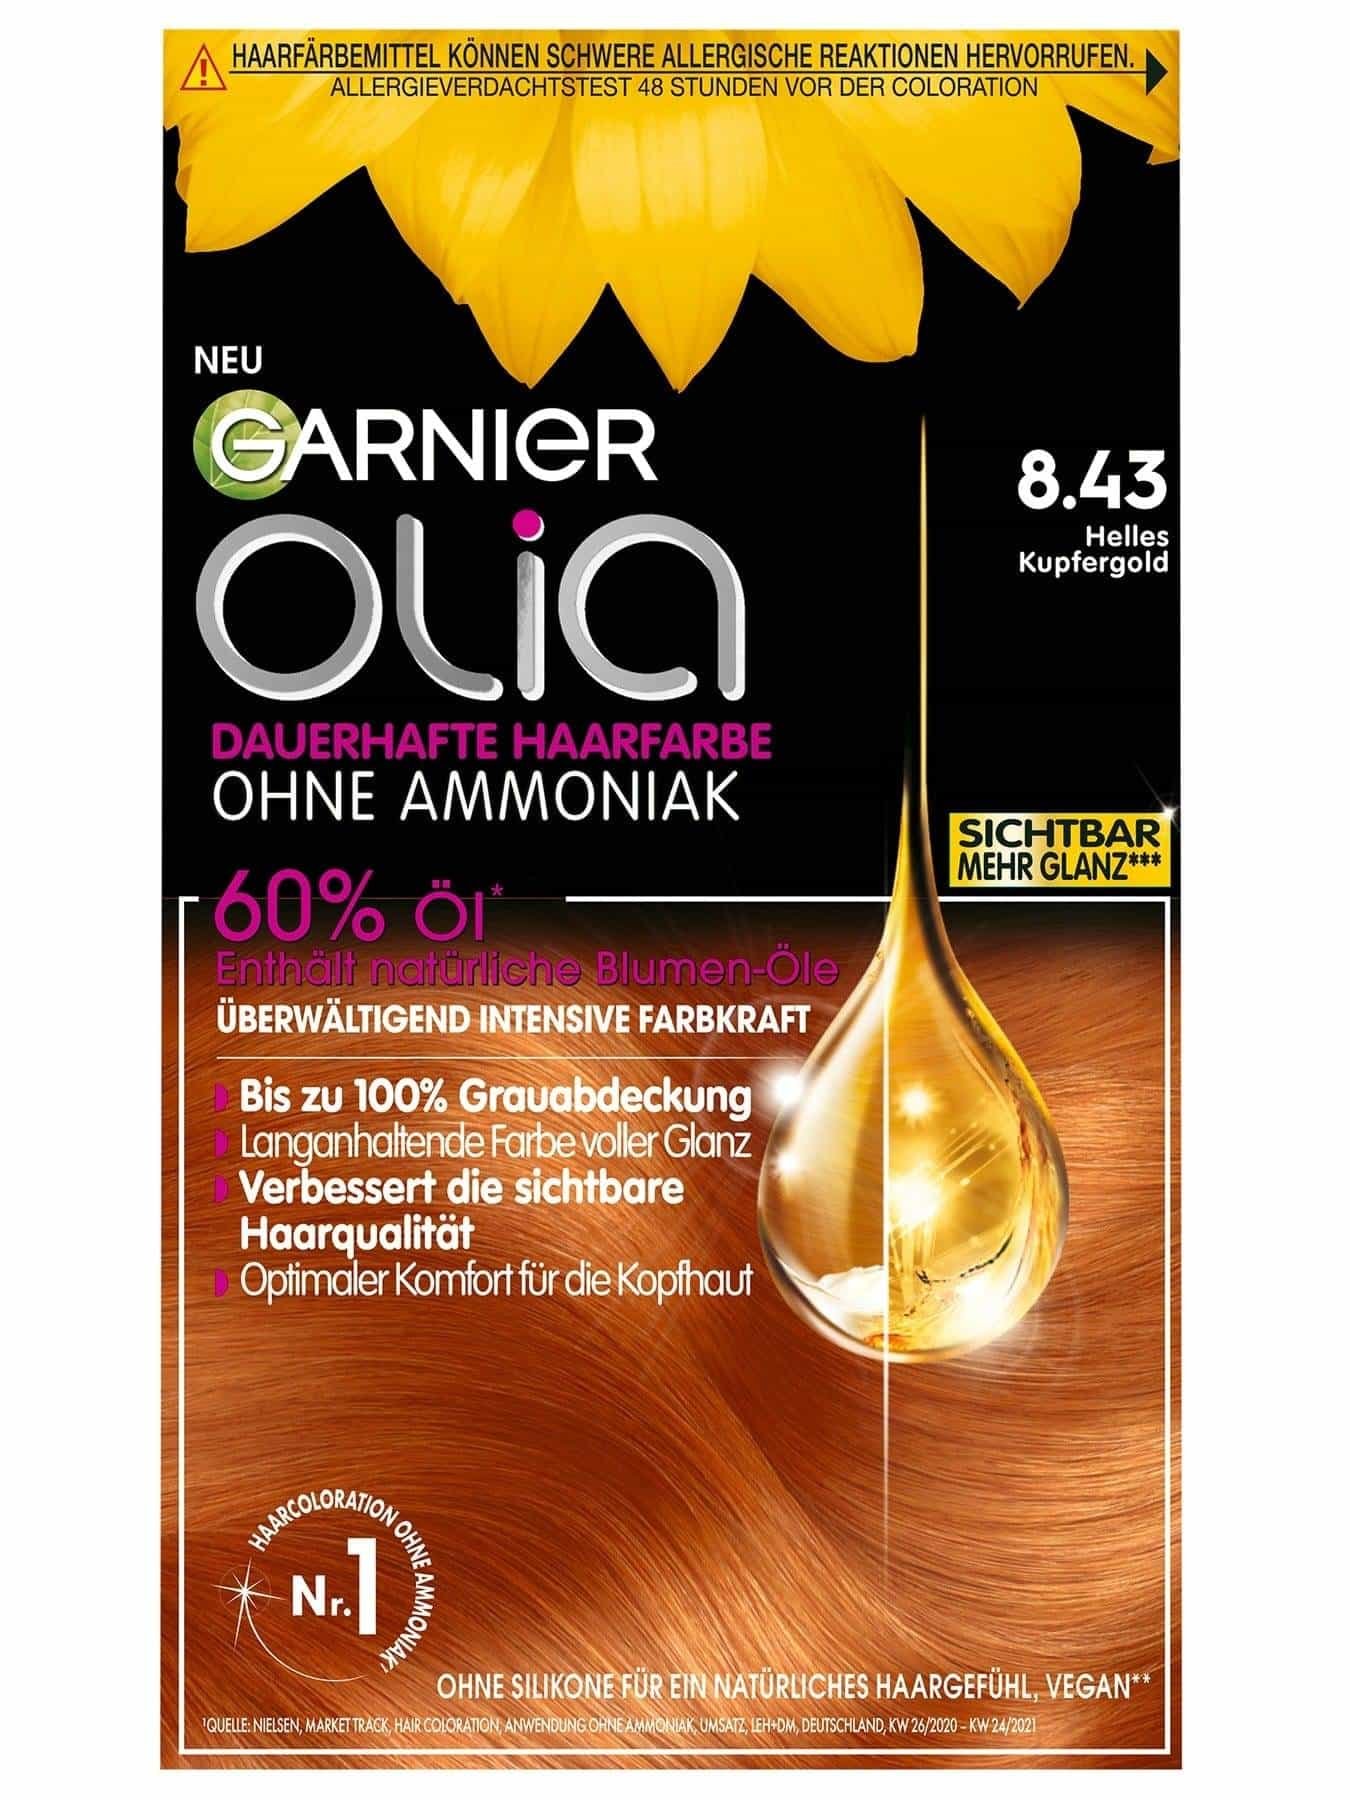 Garnier Olia 8 43 Helles Kupfergold - Produktabbildung